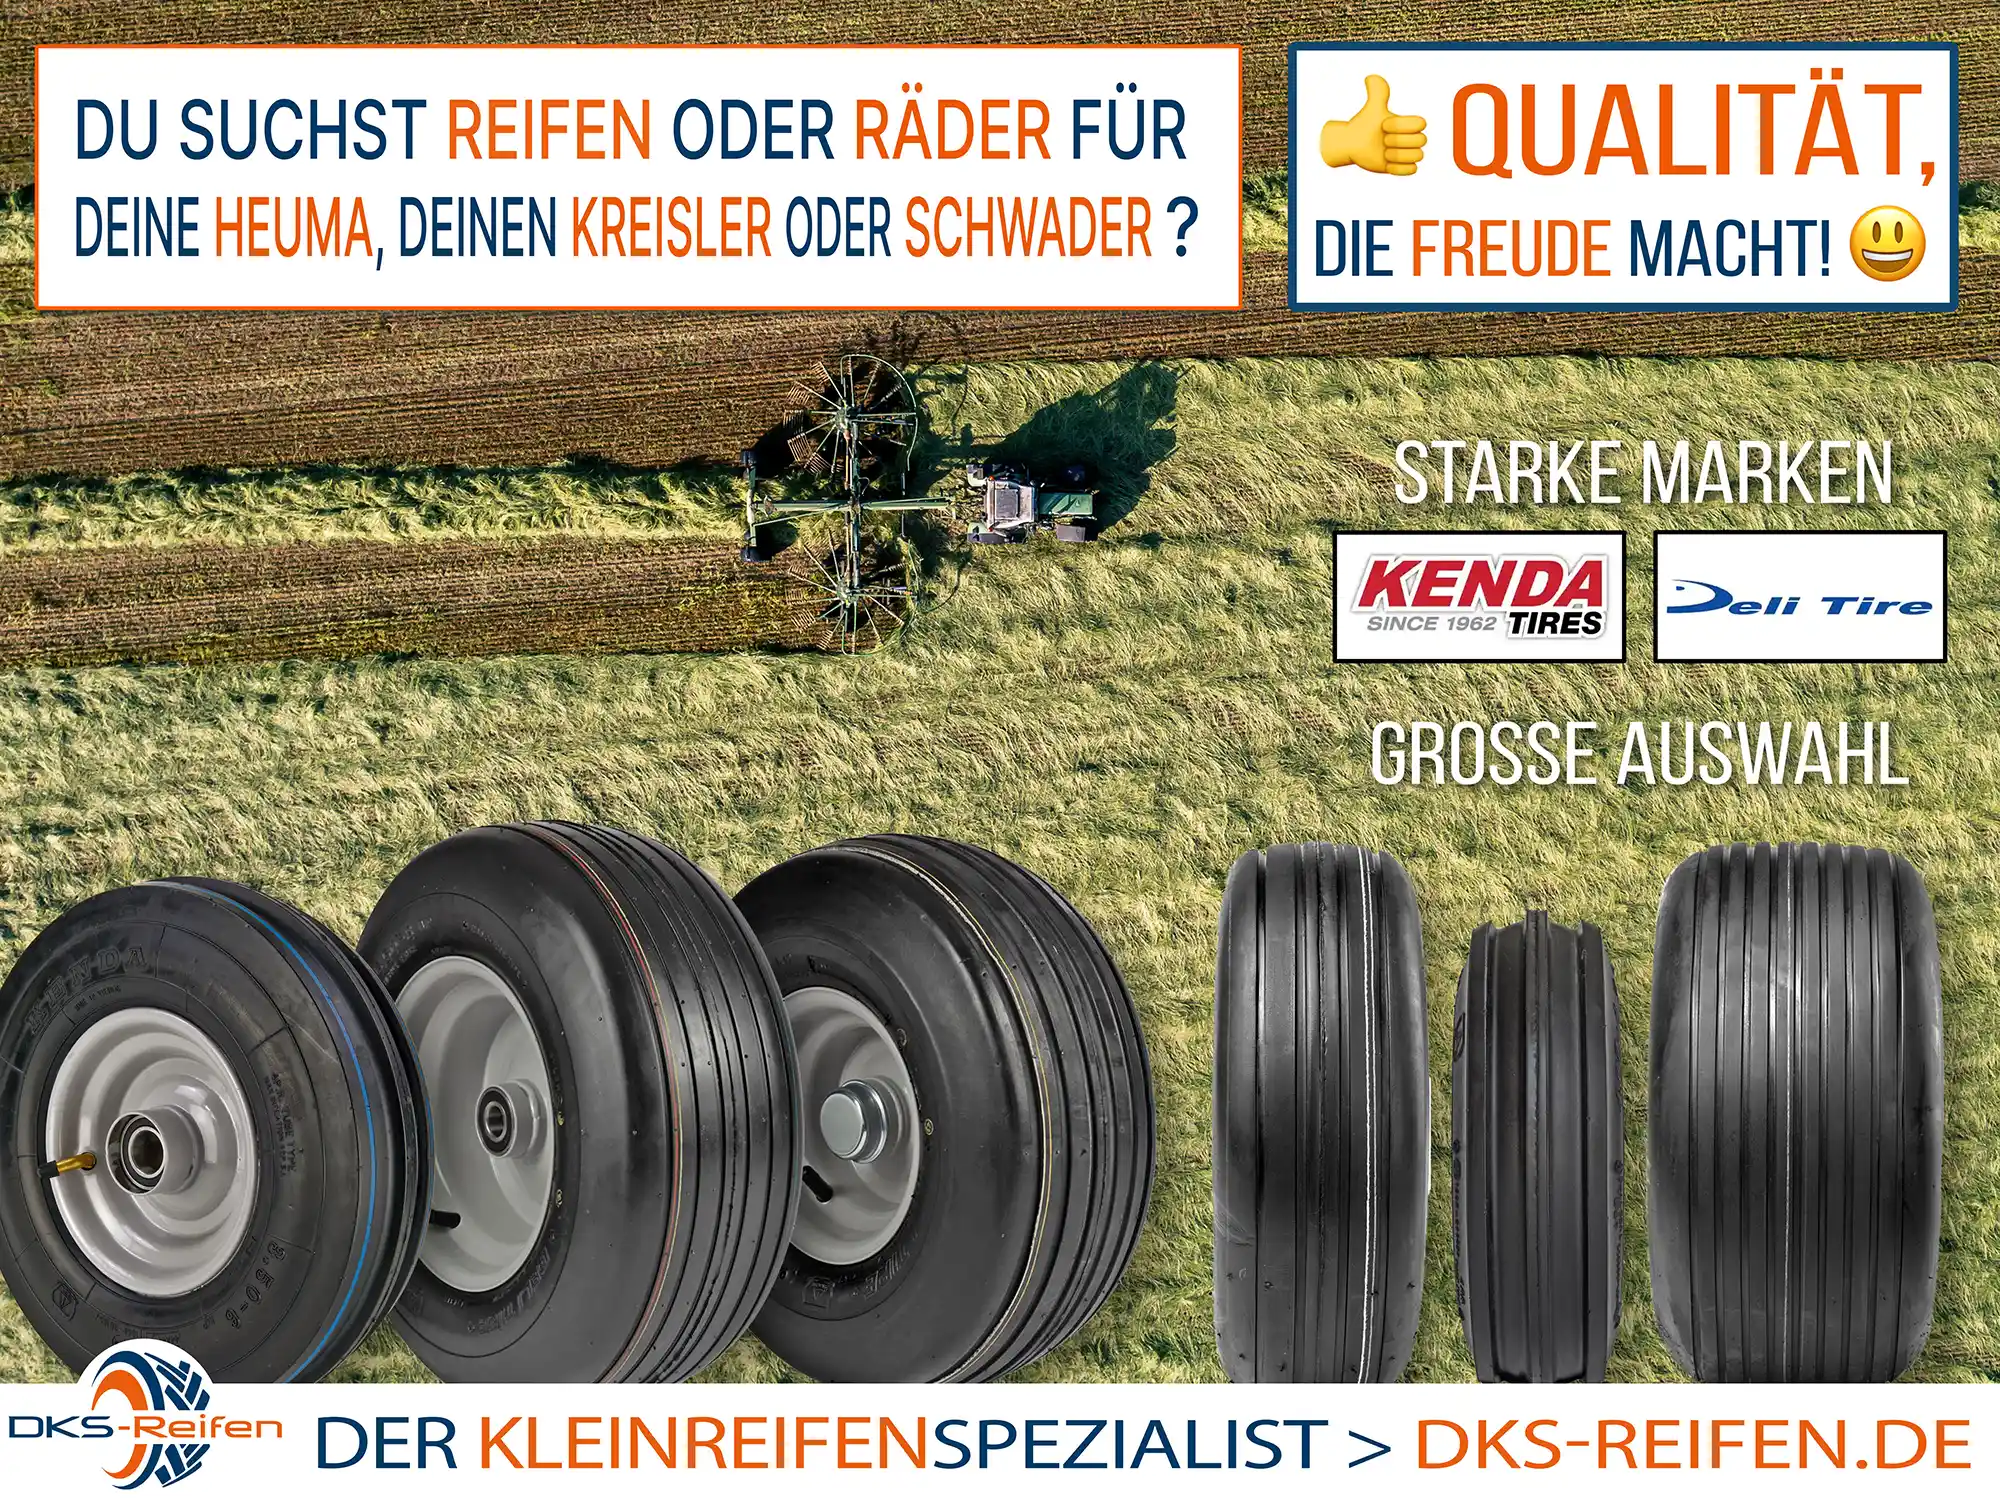 Reifen und Räder für Heuma, Kreisler, Schwader und andere landwirtschaftliche Geräte